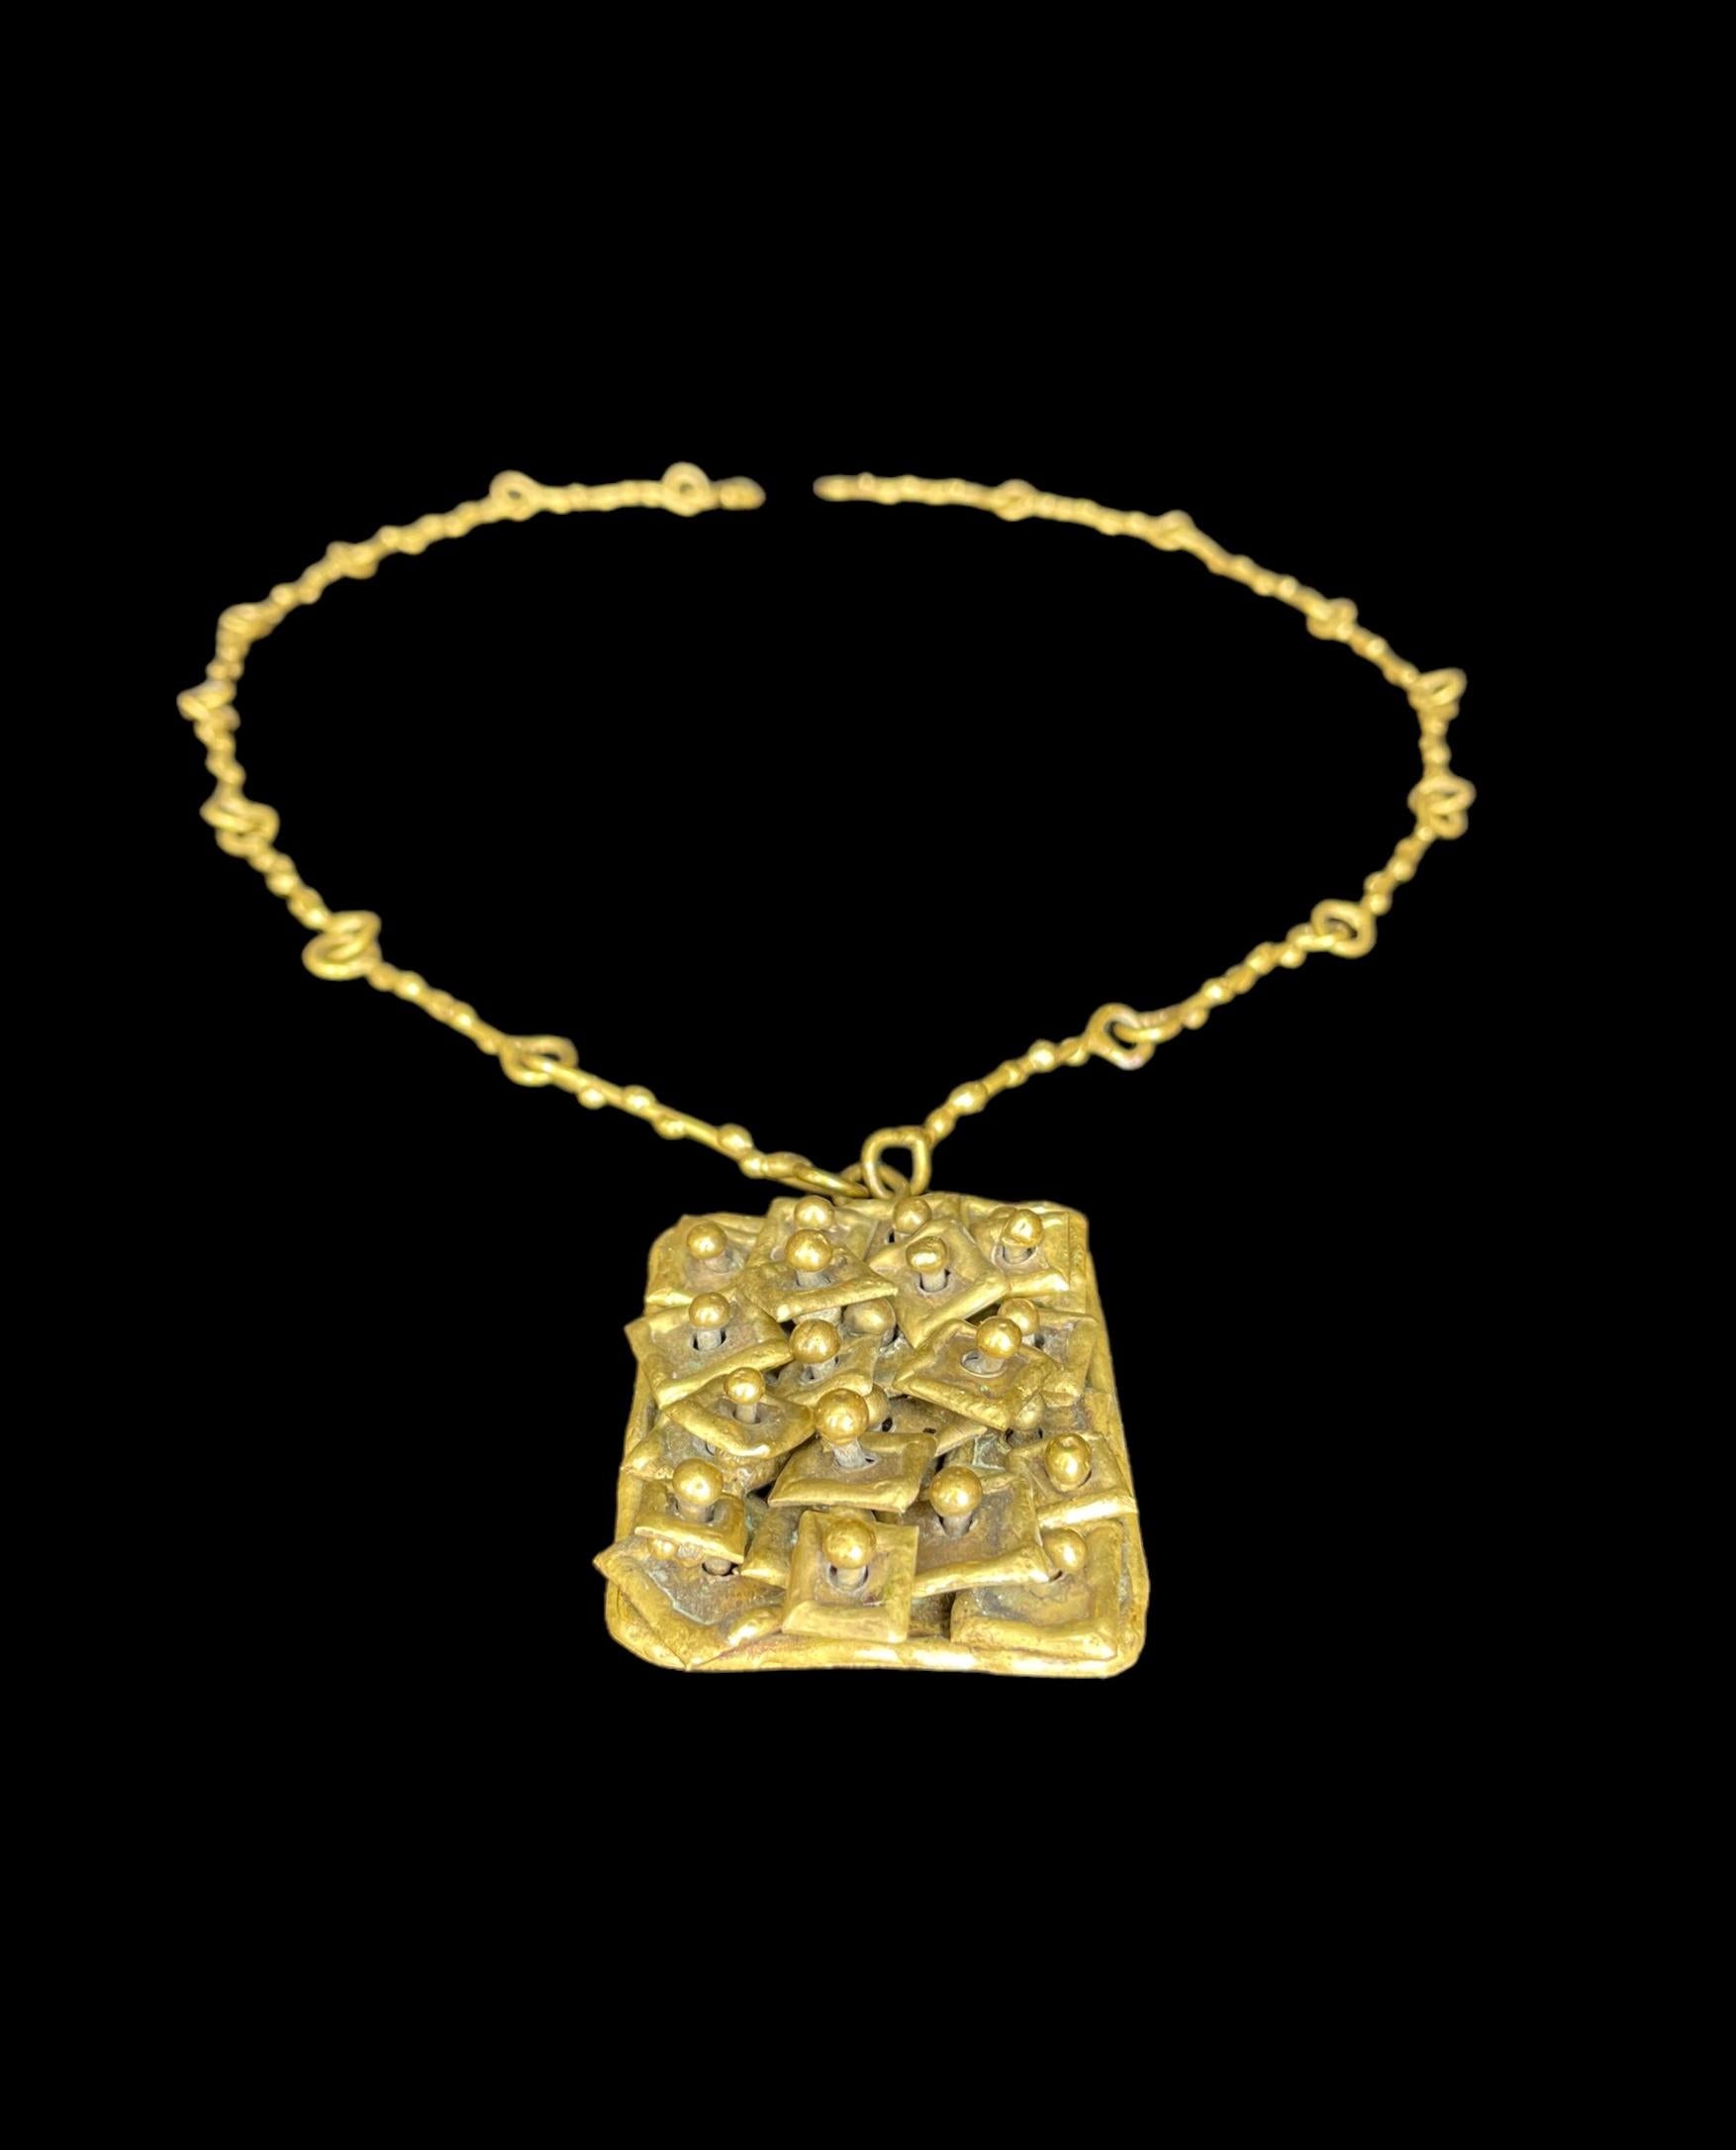 Pal Kepenyes Brutalist Brass Necklace Signed For Sale 4